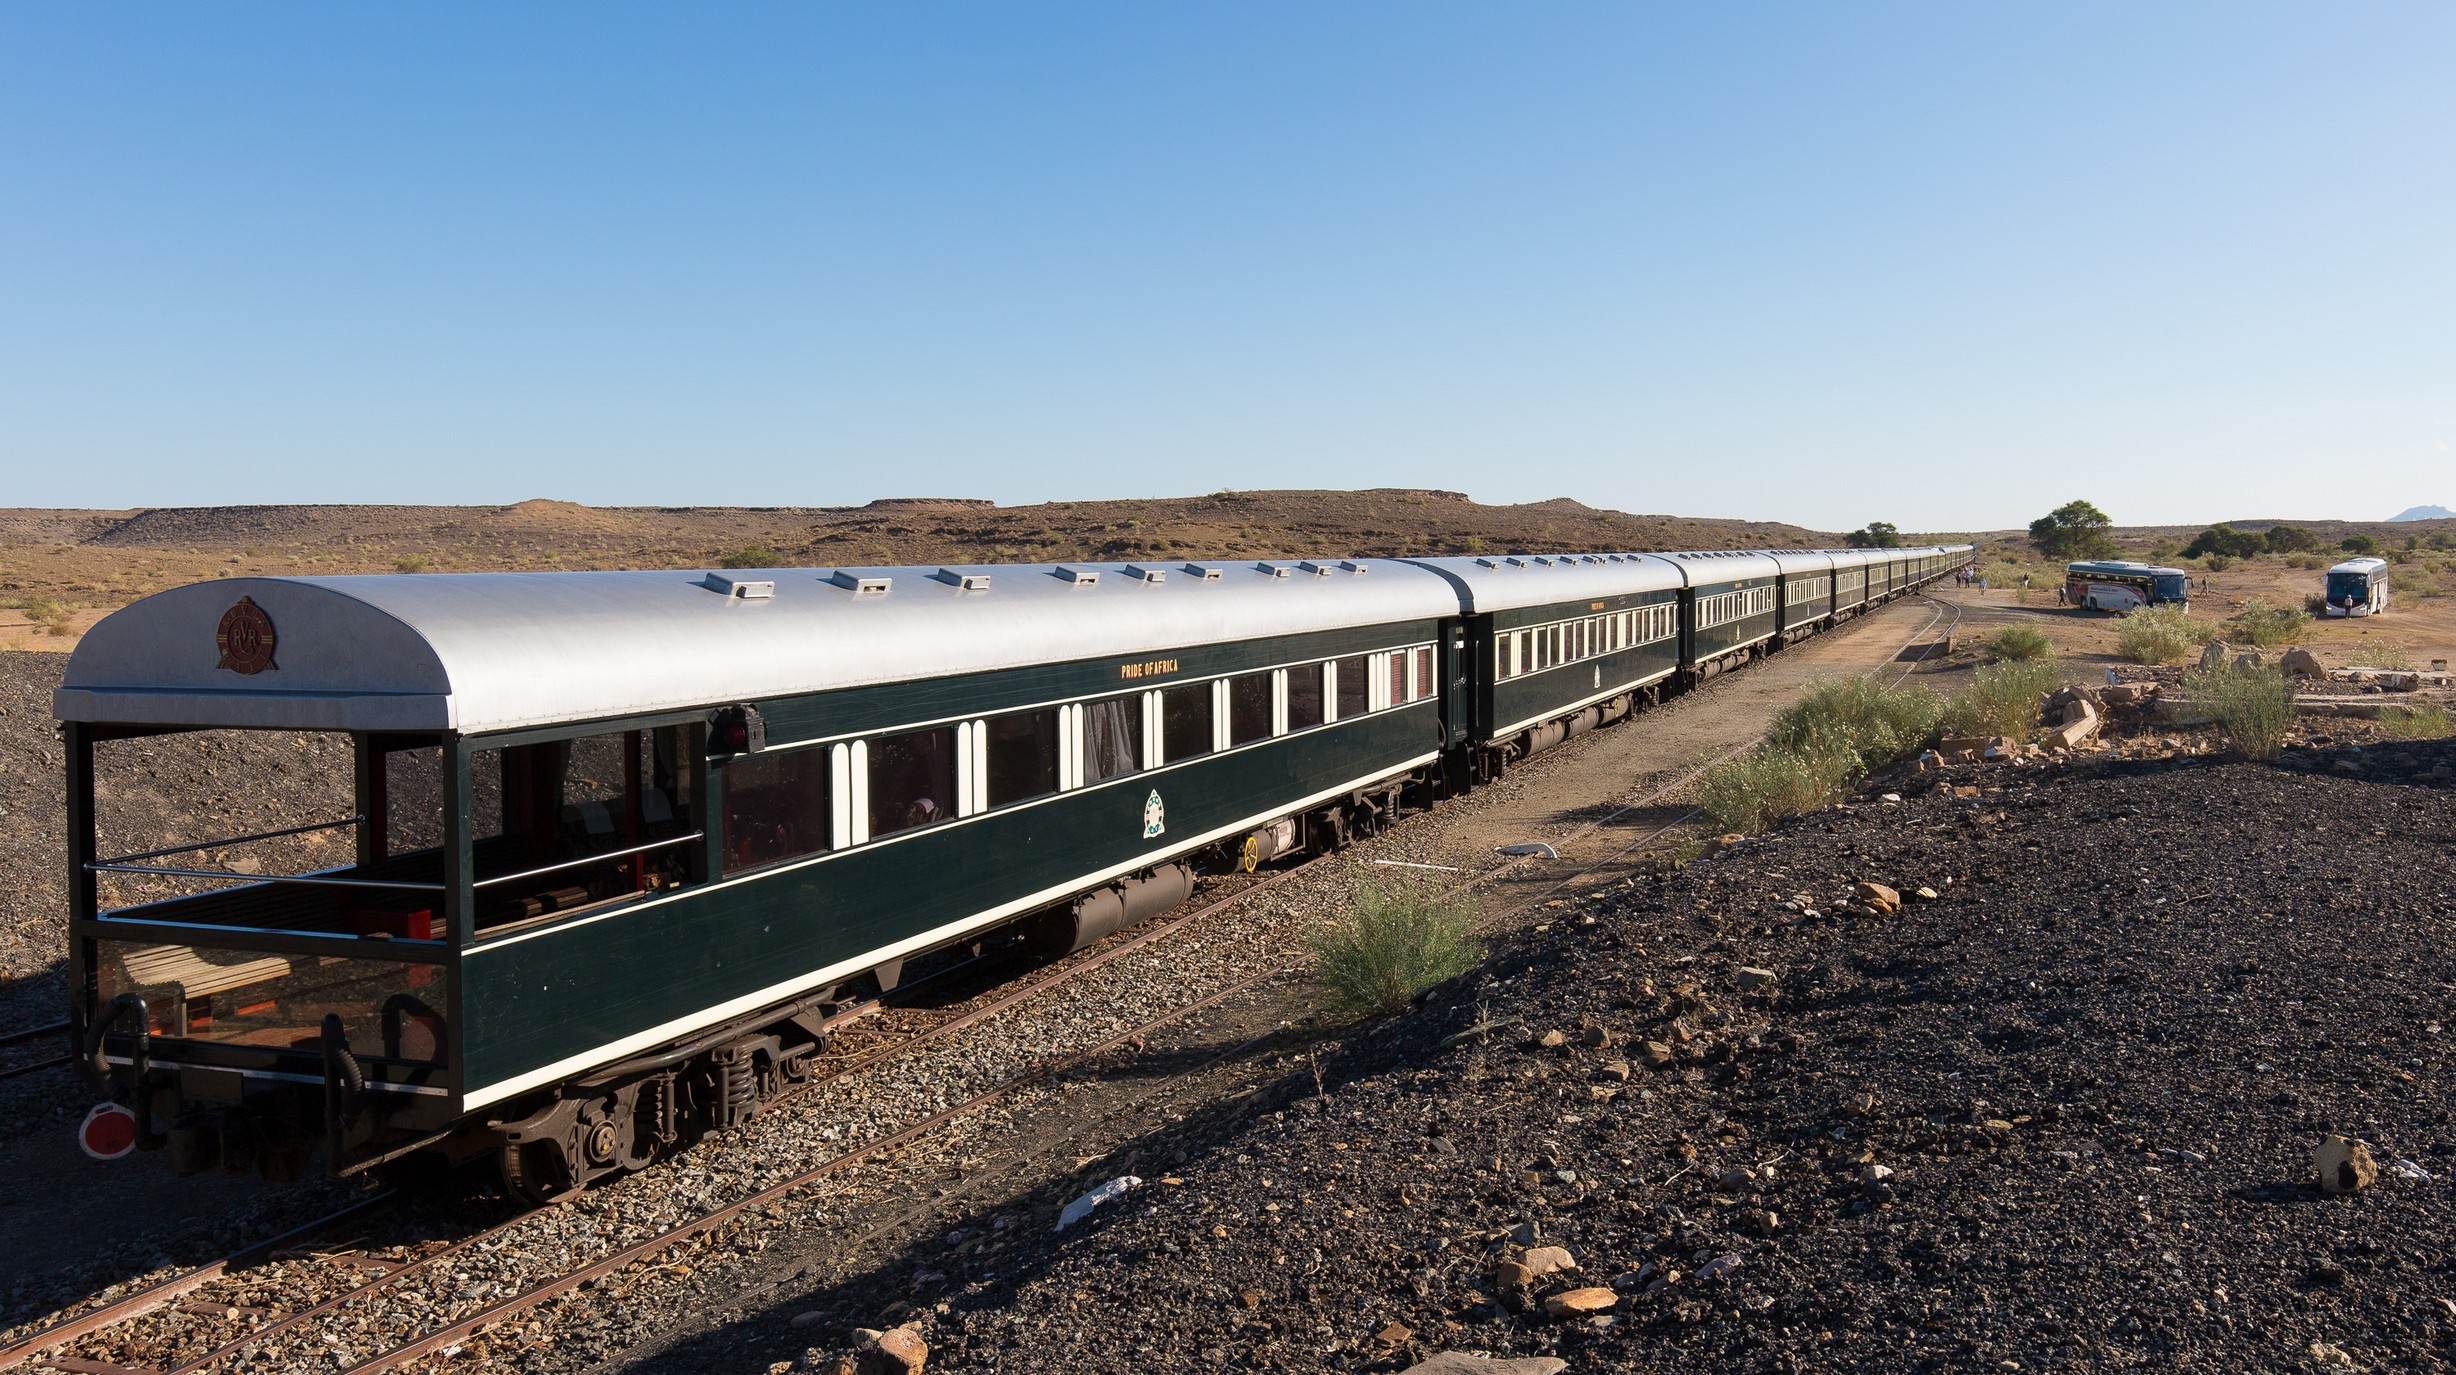 16-daagse rondreis door Zuid Afrika met de Shongololo Express